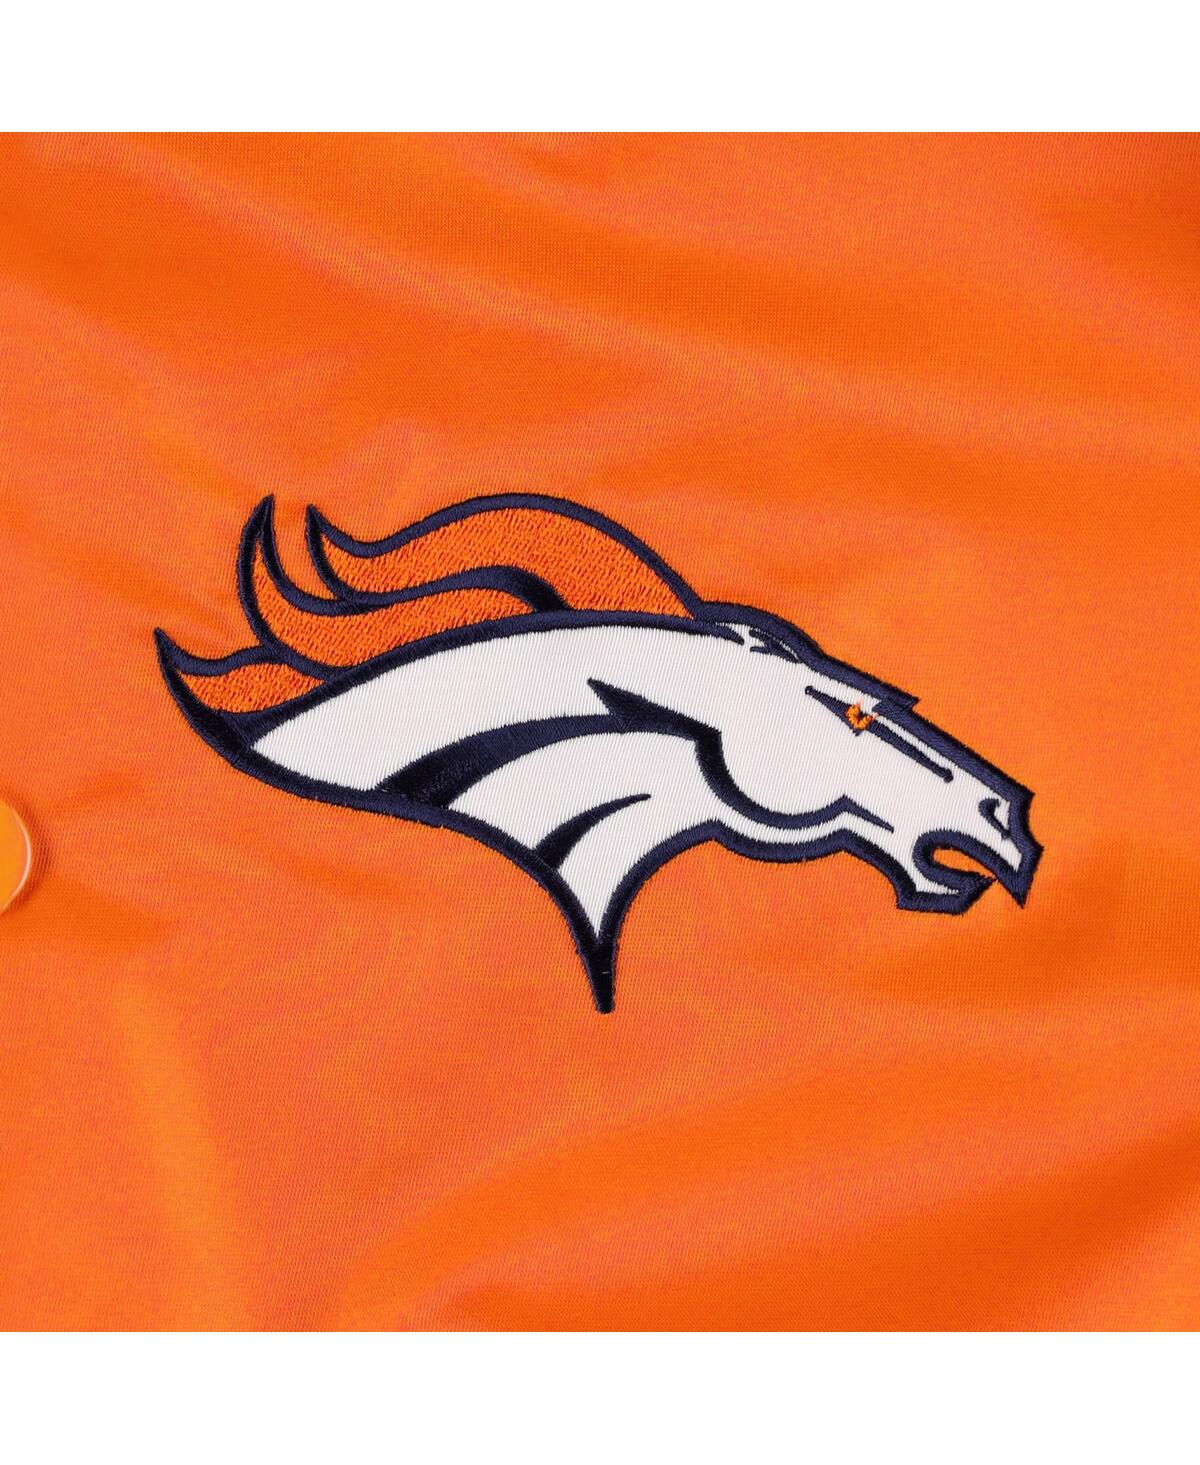 Shop Starter Men's  Orange Denver Broncos The Pick And Roll Full-snap Jacket